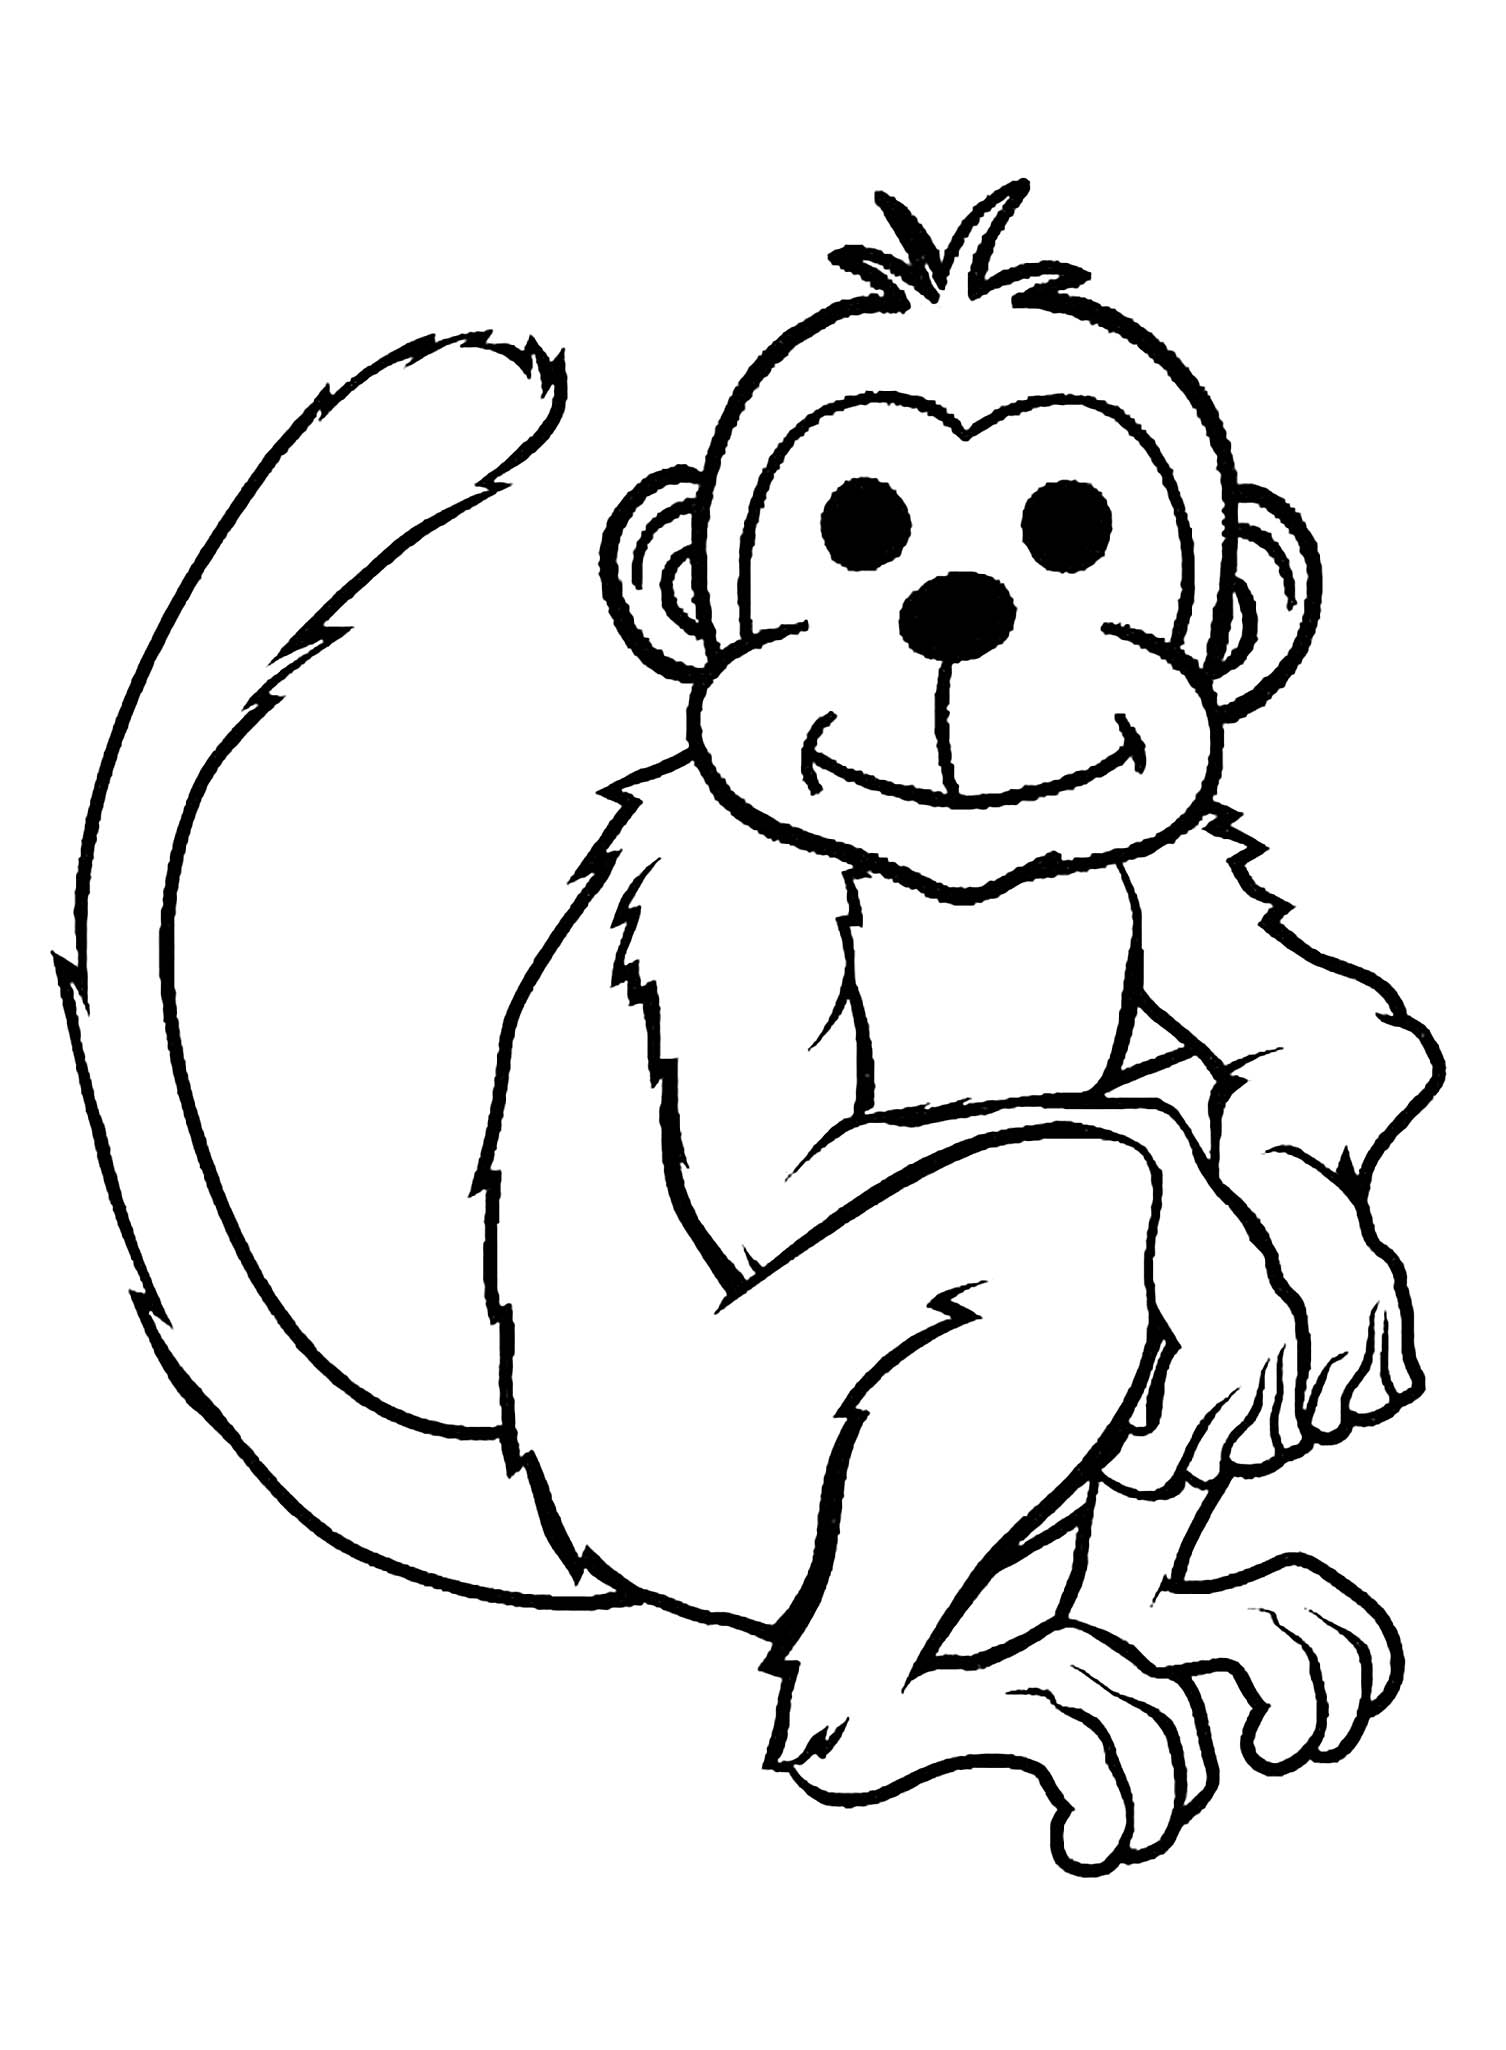 Desenho de macacos para imprimir e colorir